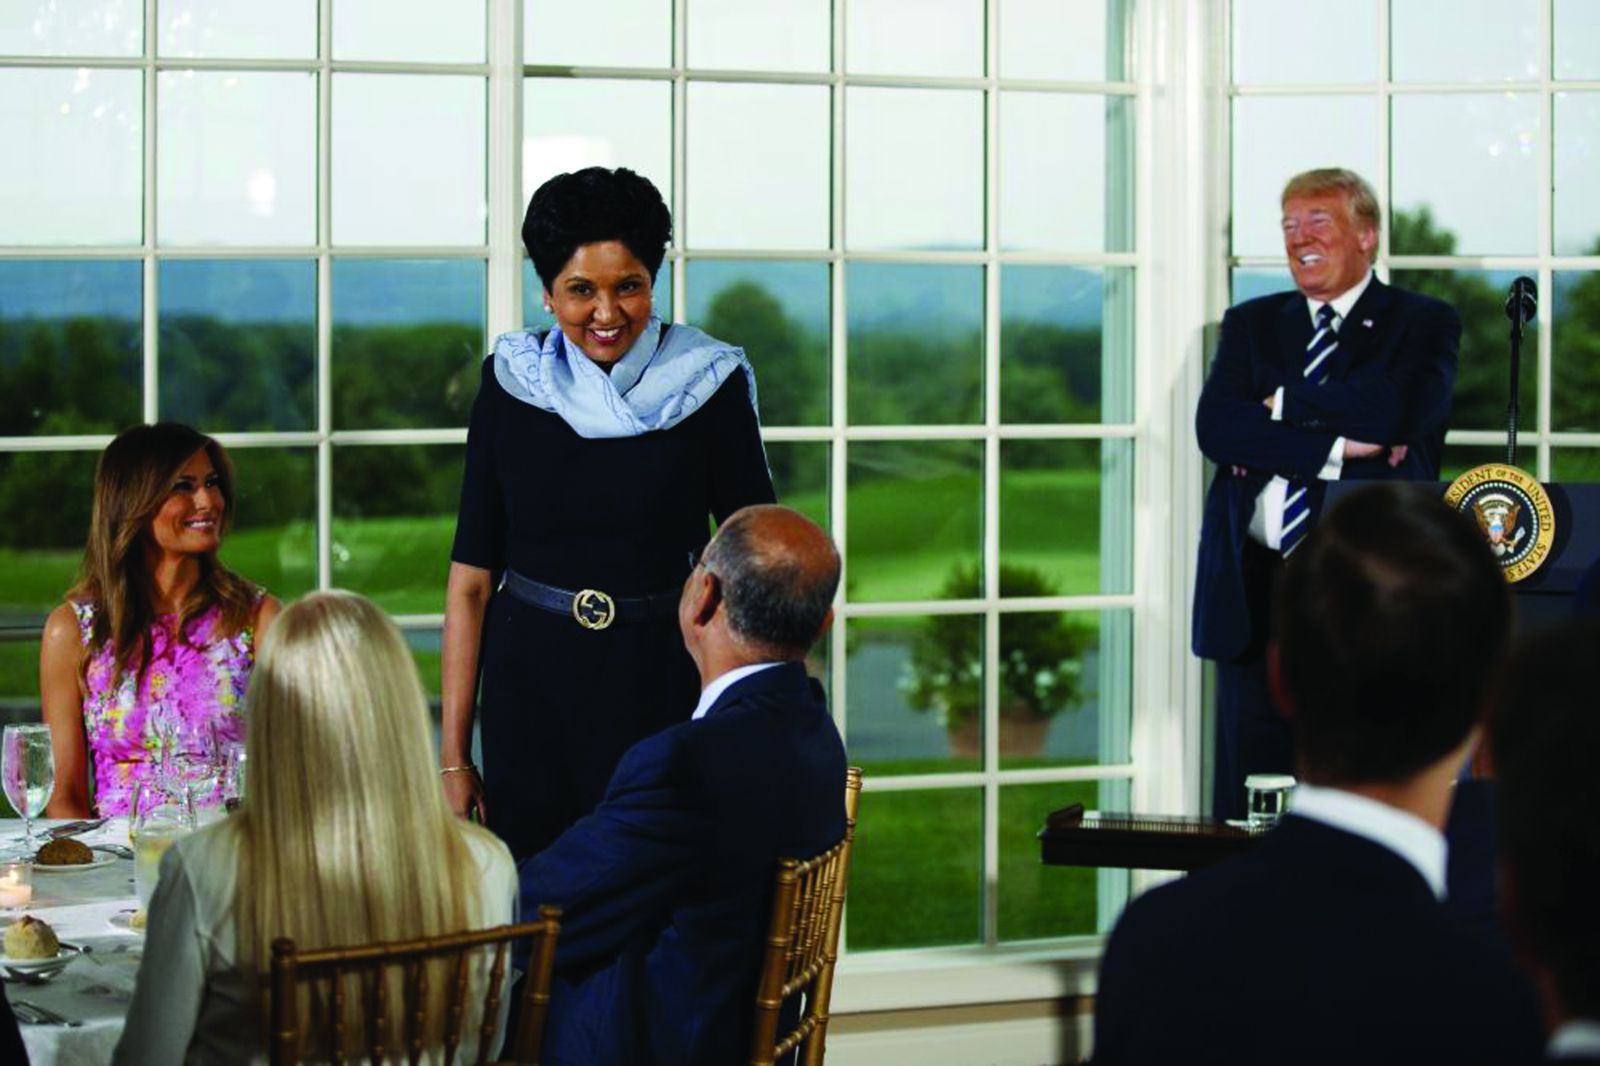  Indra Nooyi tại một bữa tối dành cho các nhà lãnh đạo doanh nghiệp do tổng thống Hoa Kỳ lúc bấy giờ là Donald J Trump tổ chức vào năm 2018. Bên cạnh bà là đệ nhất phu nhân Melania Trump. Ảnh: AP